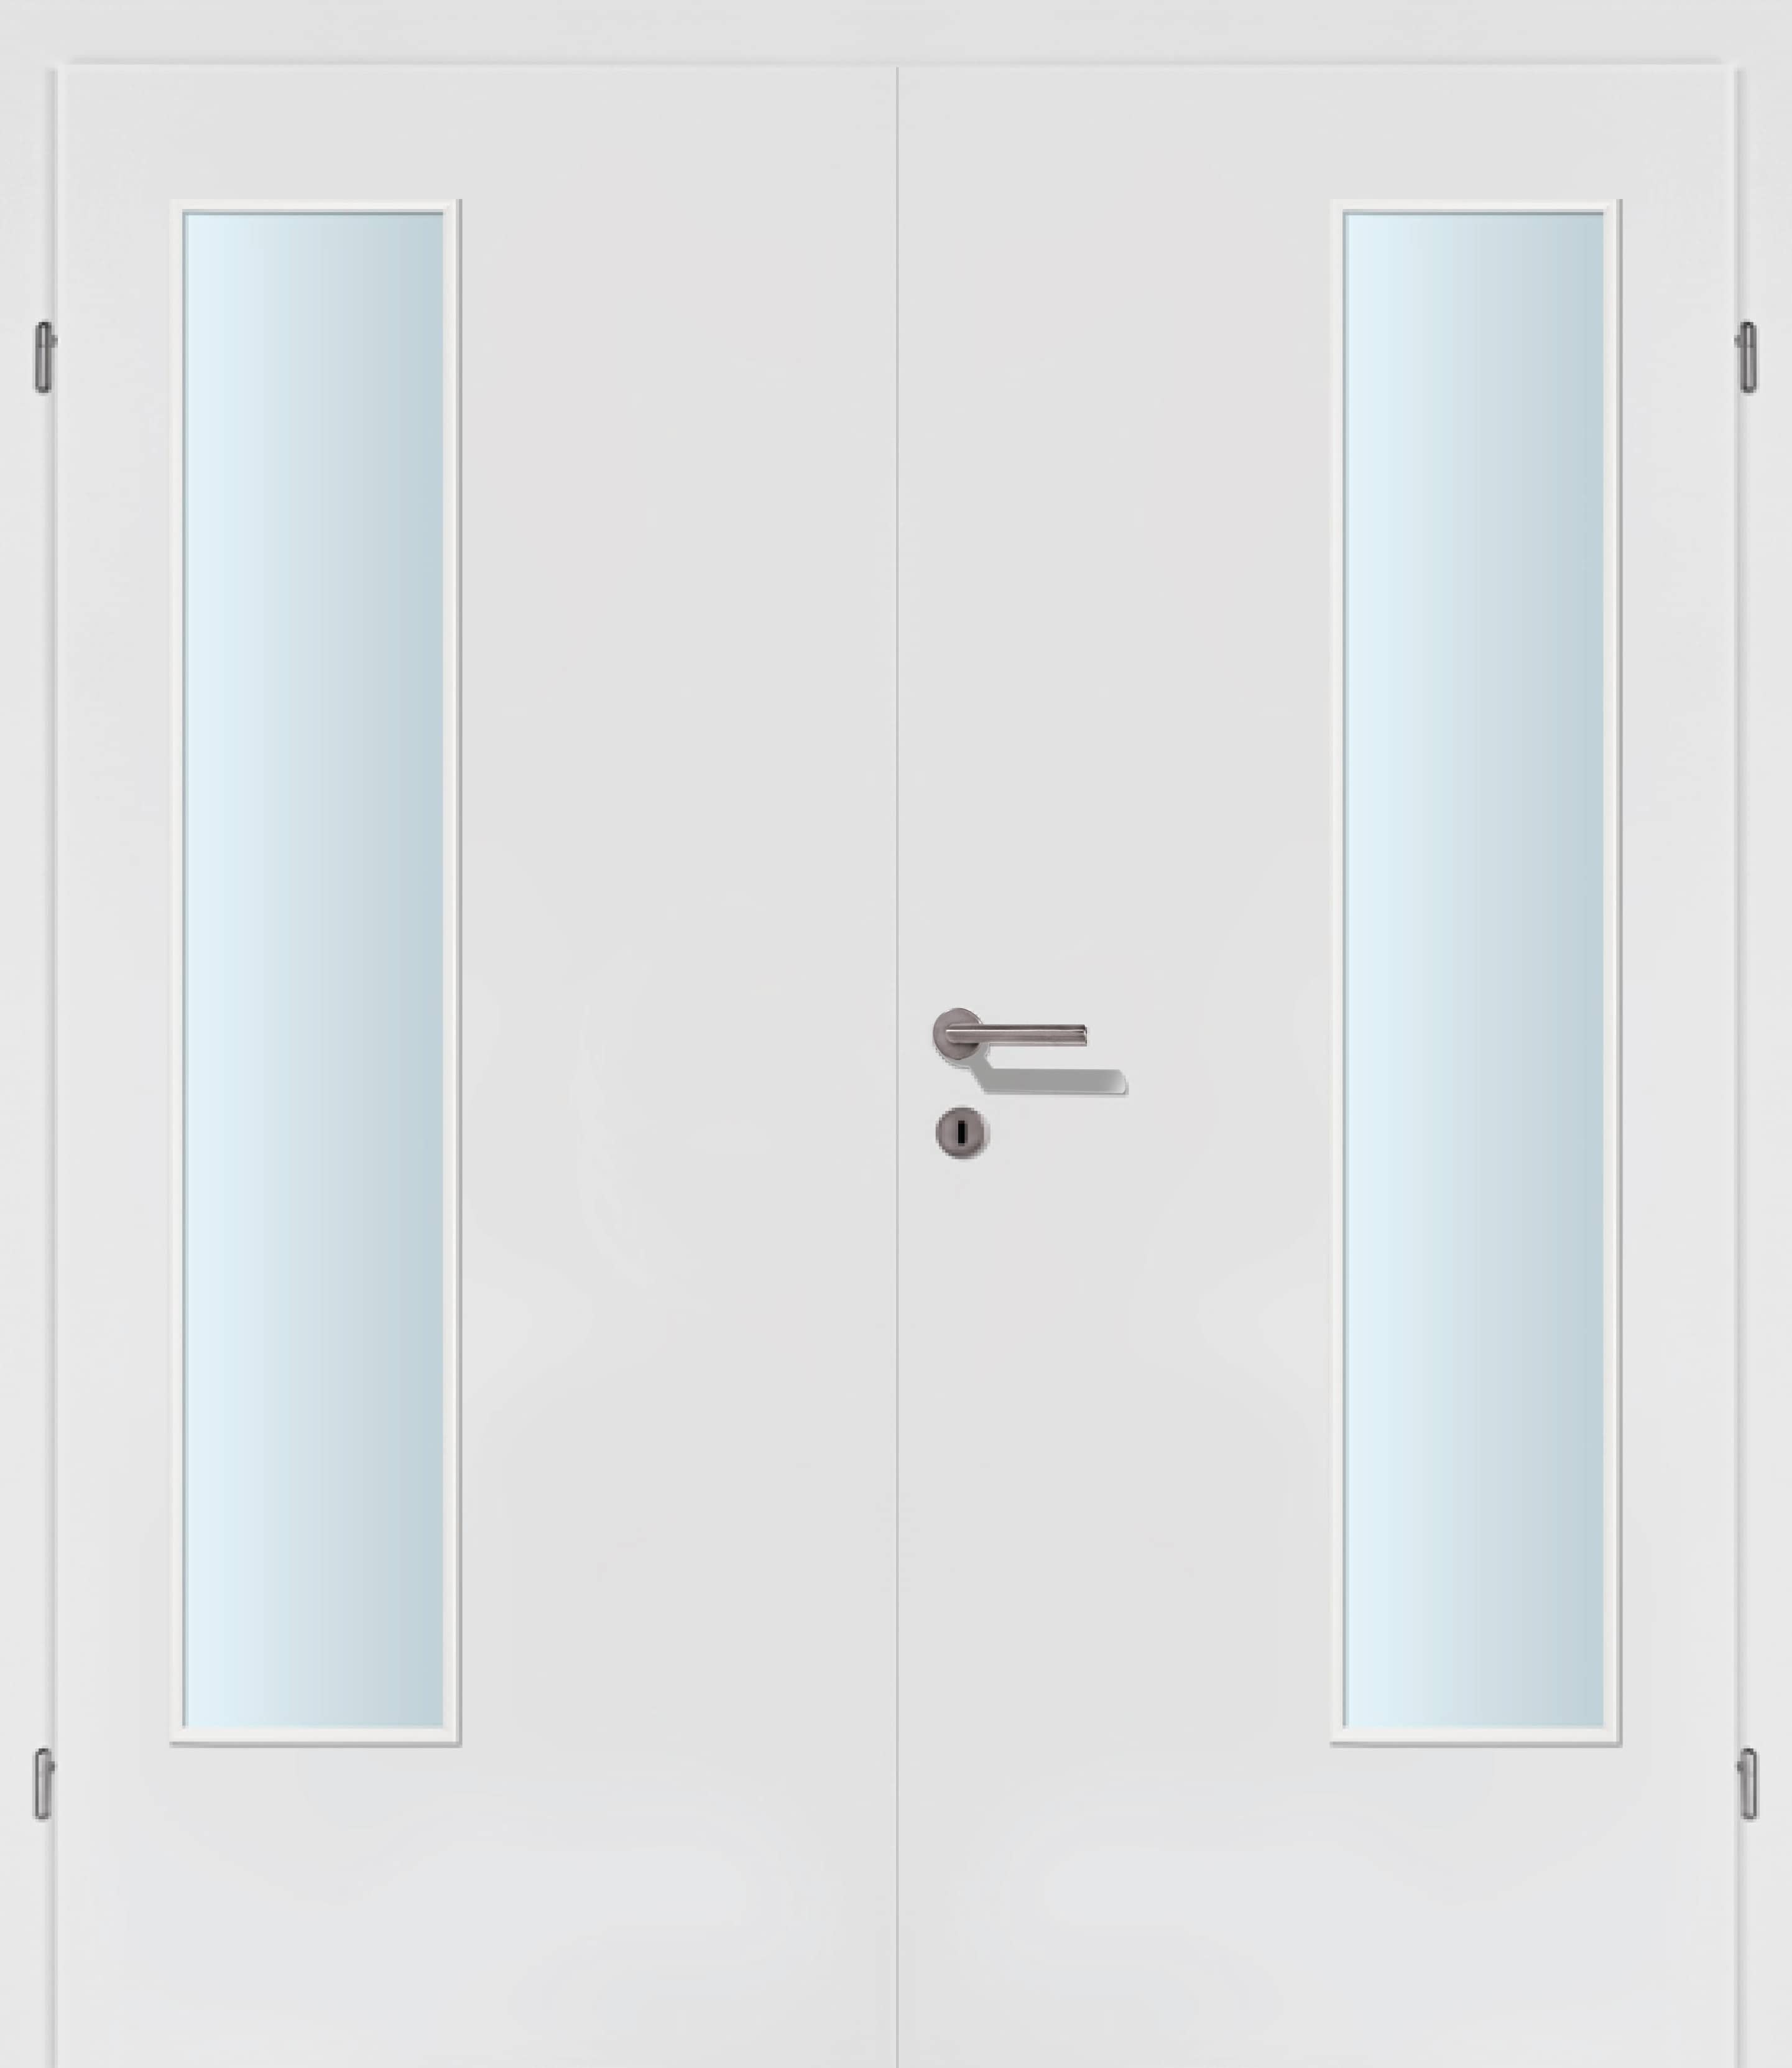 Exklusiv weiss Innentür Inkl. Zarge (Türrahmen) Doppeltüre Inkl. Glaslichte EN Bandseitig